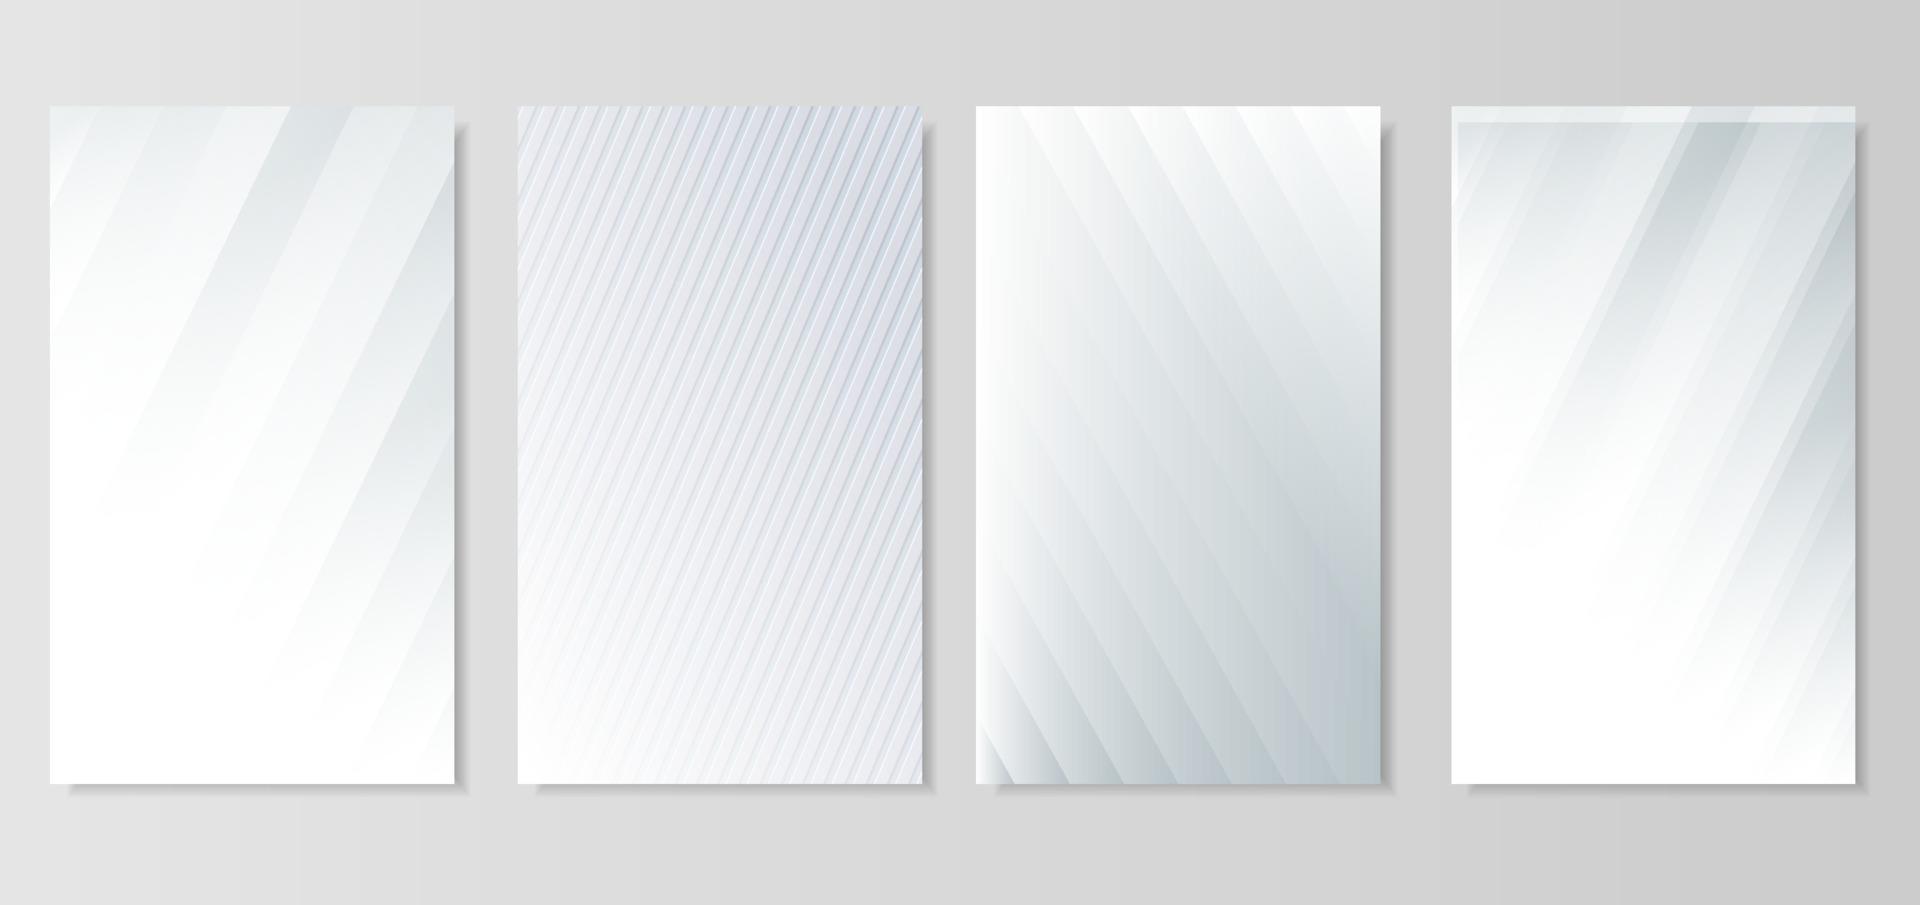 ensemble de lignes diagonales abstraites vecteur de fond argent clair. fond blanc et gris moderne.